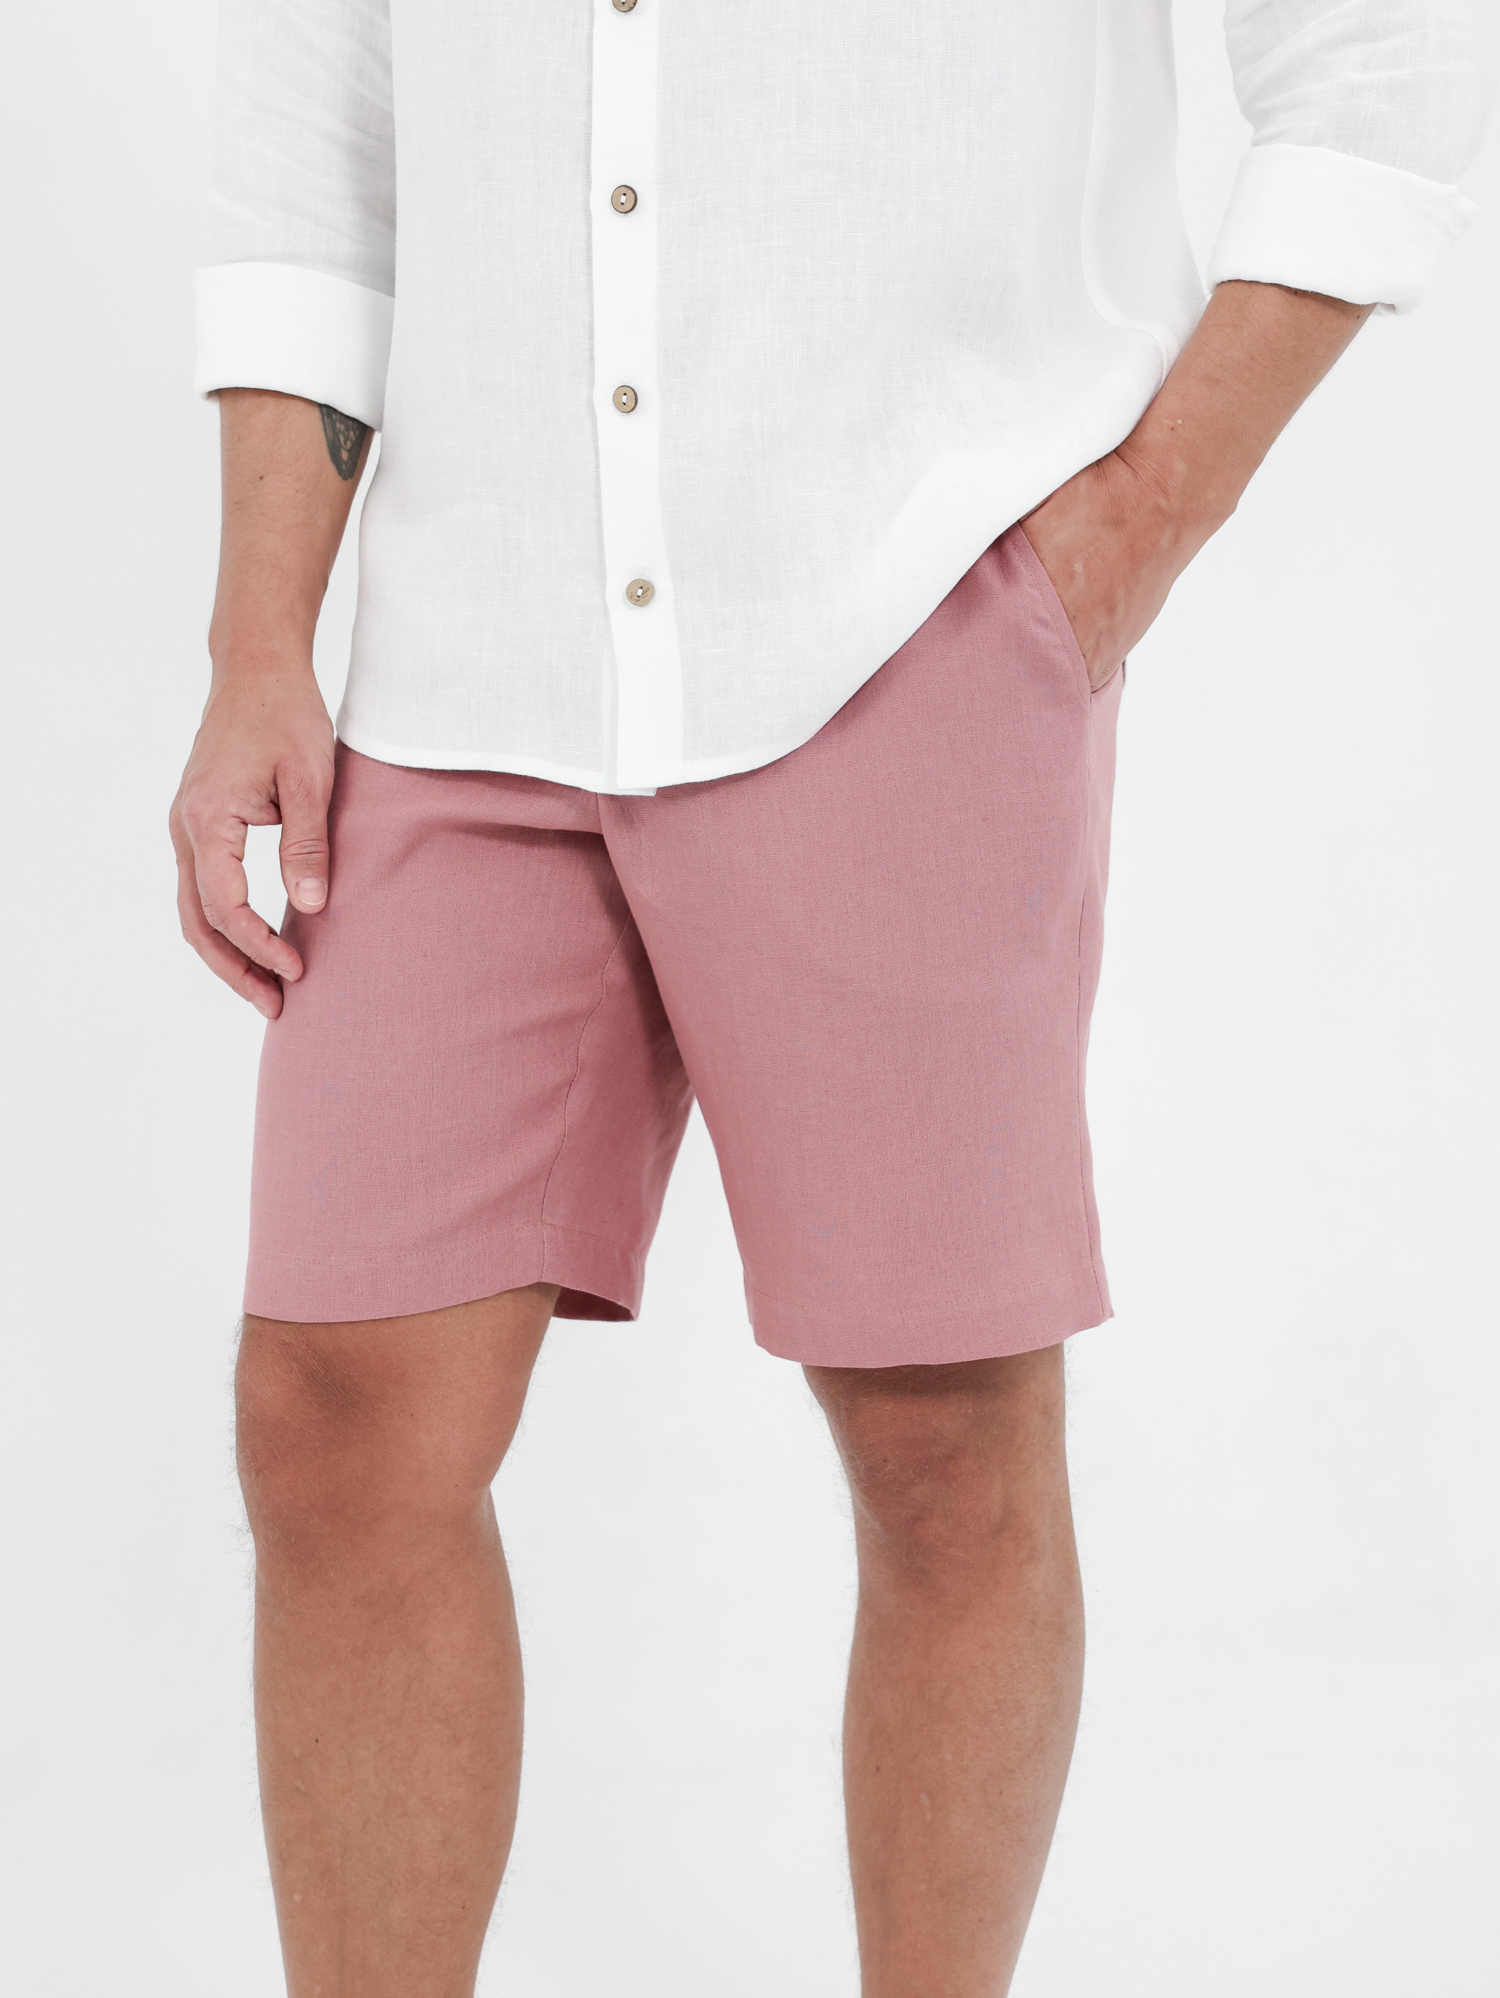 Men's linen shorts for summer